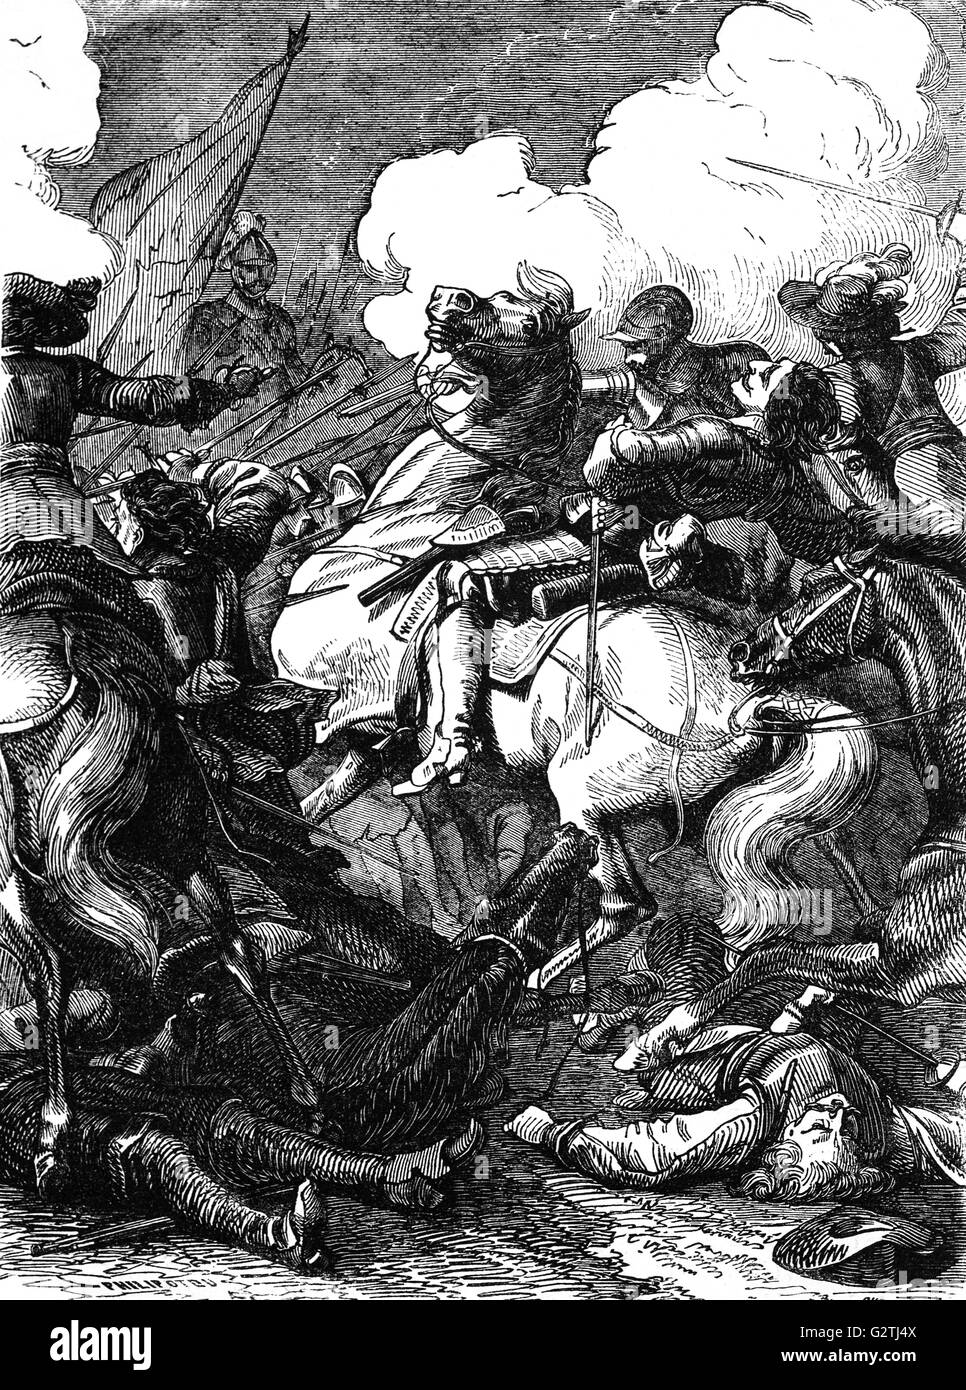 Die Schlacht von Lützen (6. November 1632) zwischen Schweden und dem Heiligen Römischen Reich, fand im Landkreis Burgenlandkreis in Sachsen-Anhalt, Deutschland und war einer der wichtigsten Schlachten des Dreißigjährigen Krieges. Stockfoto